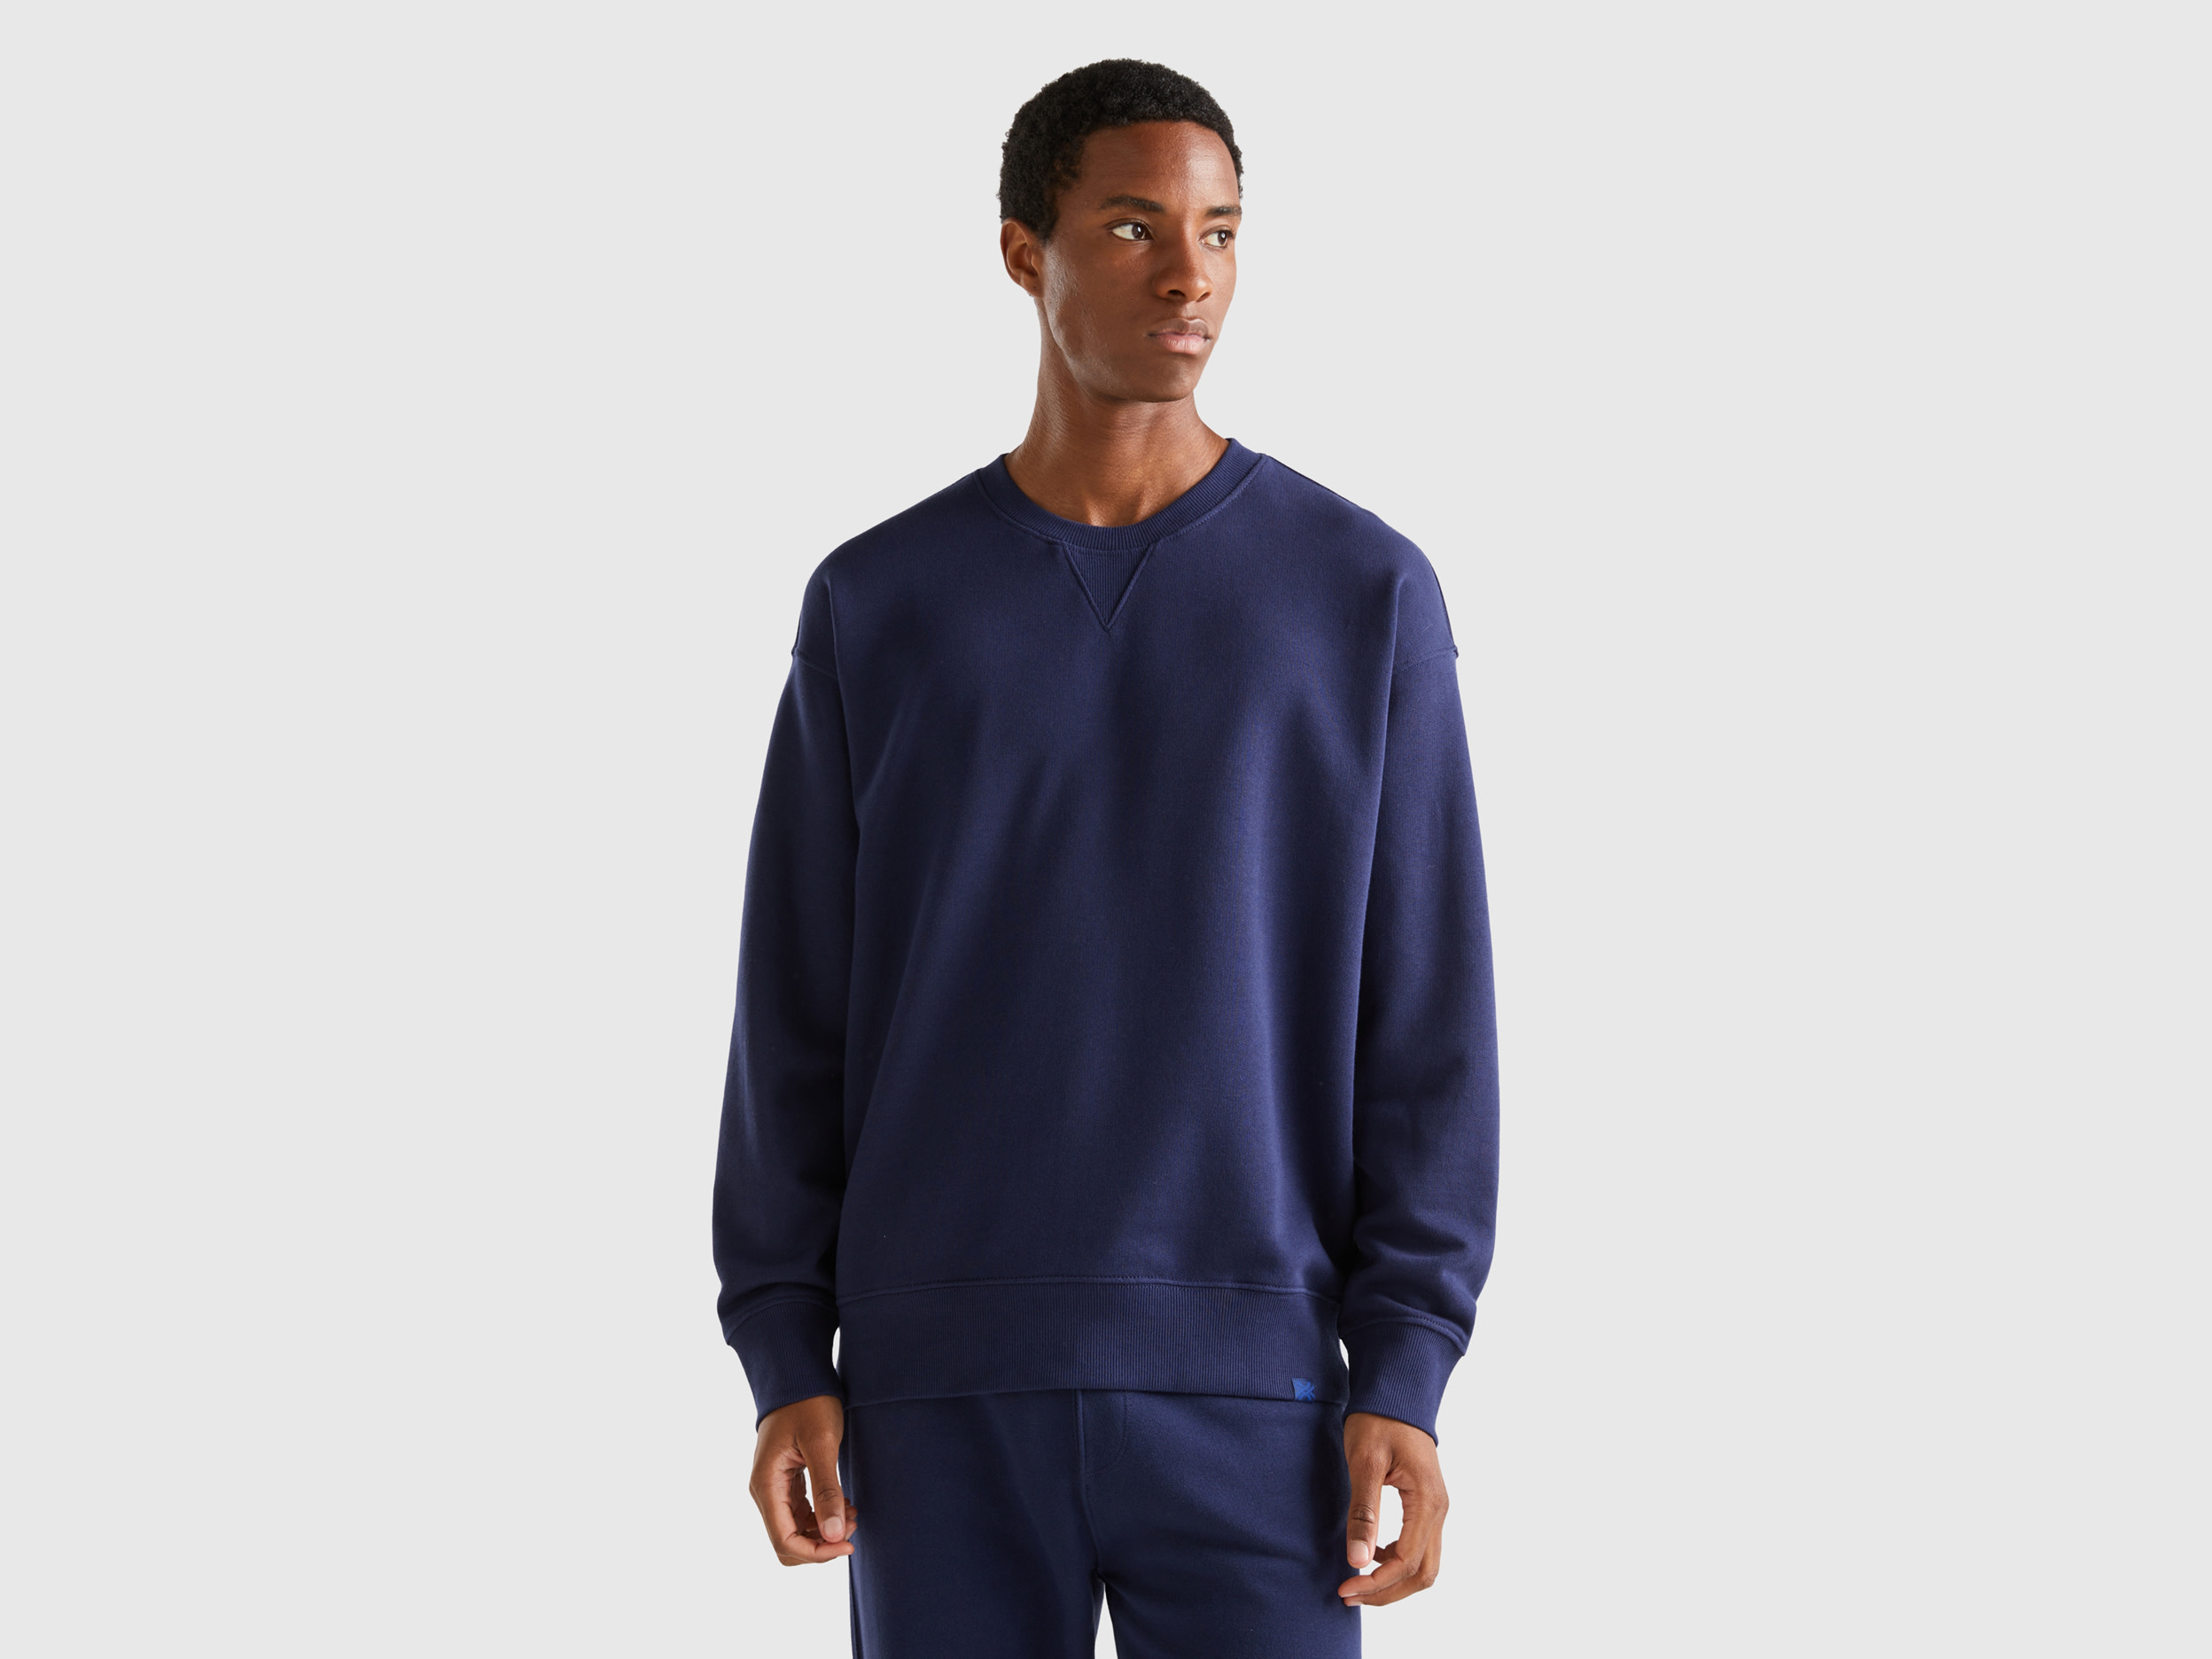 Benetton, 100% Cotton Pullover Sweatshirt, size XXL, Dark Blue, Men